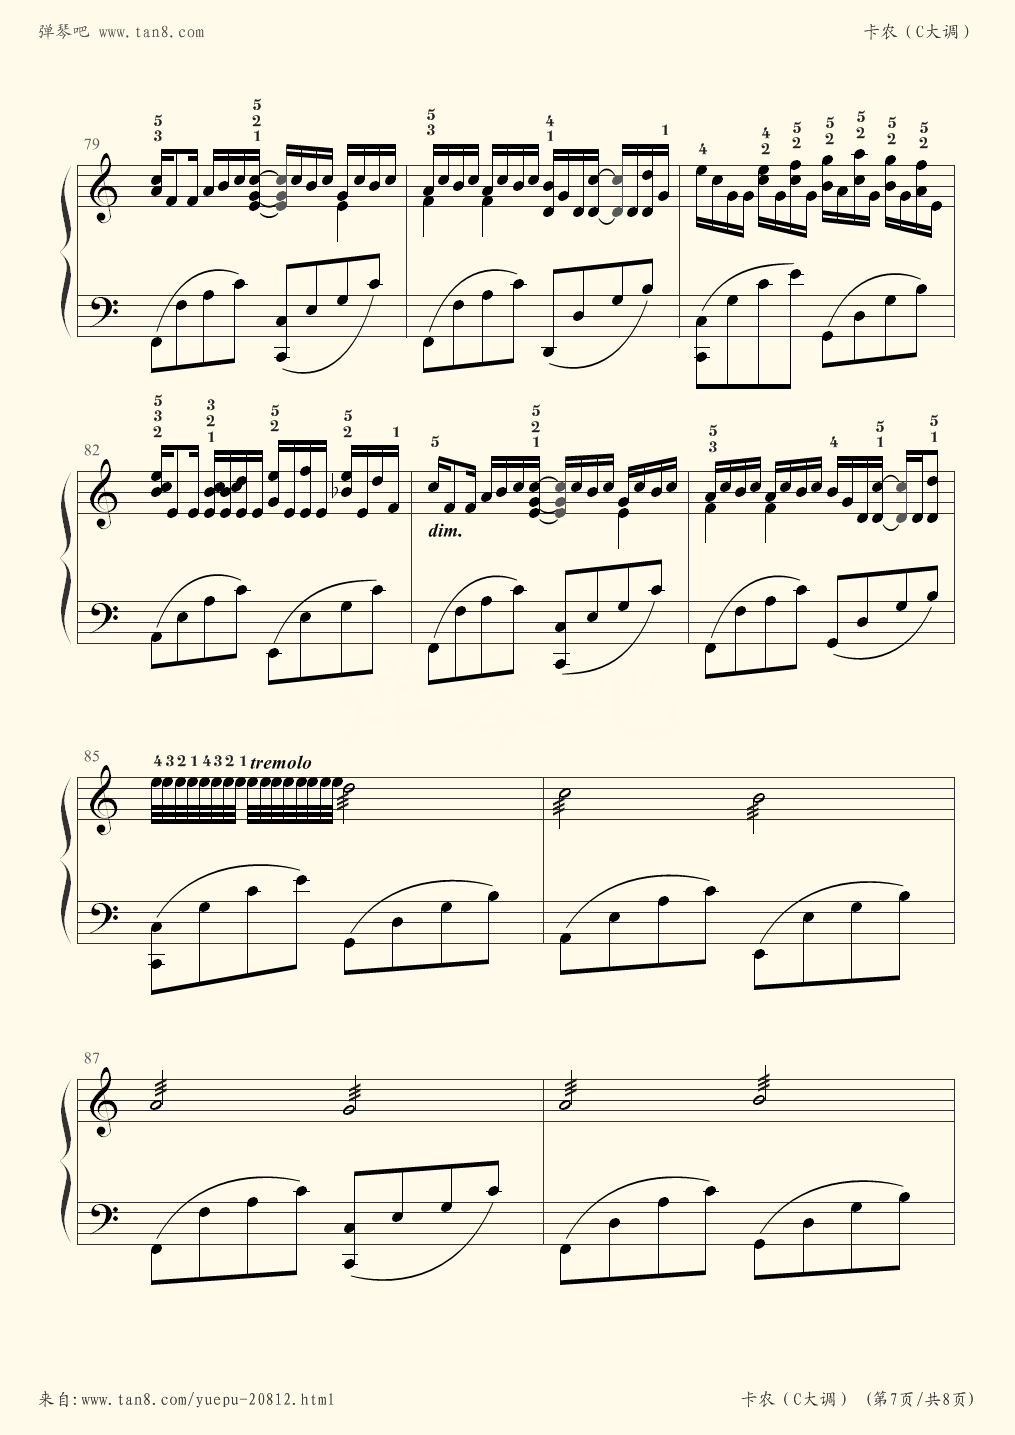 卡农钢琴曲曲谱c大调(卡农钢琴谱原版c大调)